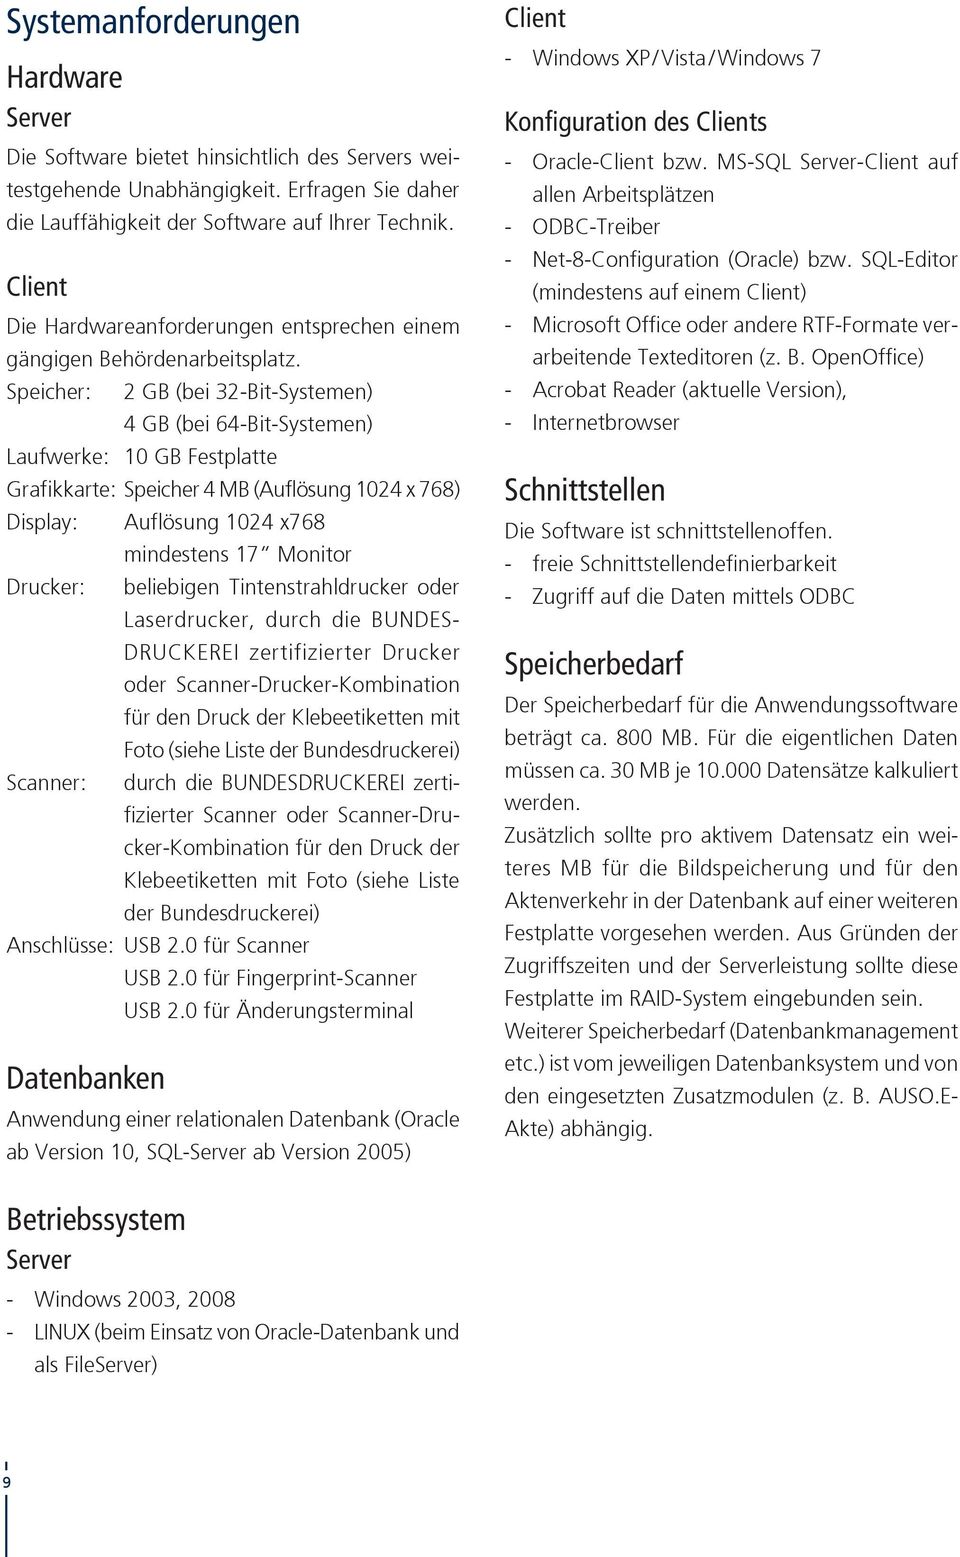 Kontakt Auso Support Hsh Soft Und Hardware Vertriebs Gmbh Rudolf Diesel Strasse Ahrensfelde Pdf Free Download